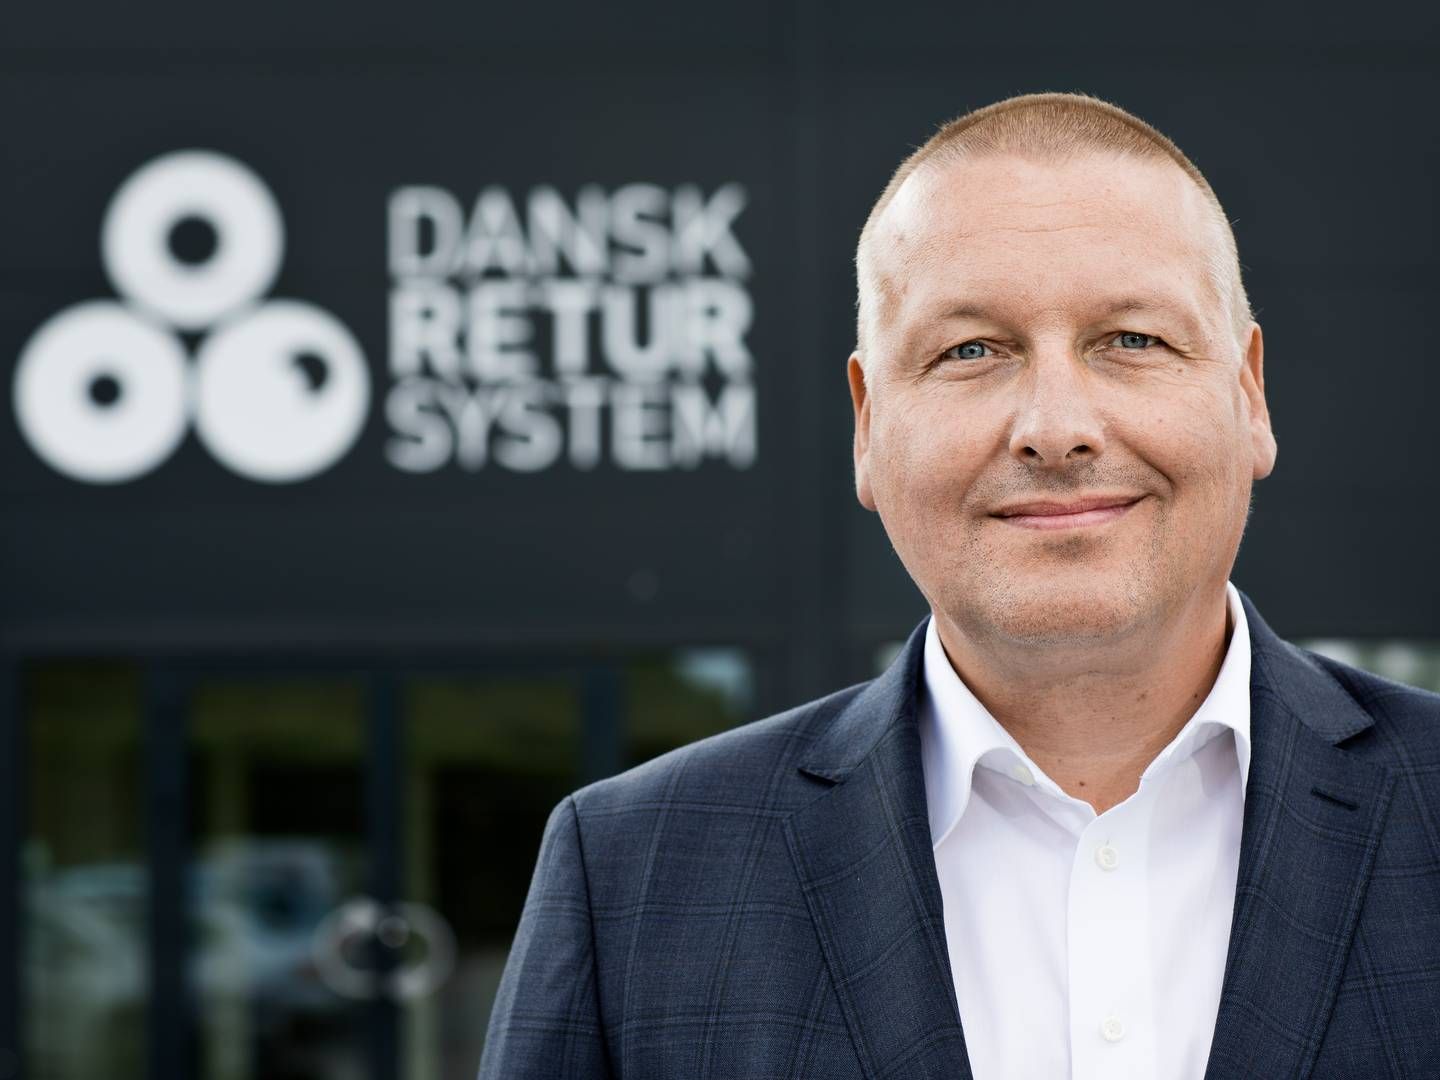 Lars Krejberg Petersen, adm. direktør i Dansk Retursystem, skal erstattes i løbet af det kommende år. Han vil i stedet kaste sig ud i bestyrelsesarbejde. | Foto: Dansk Retursystem/pr